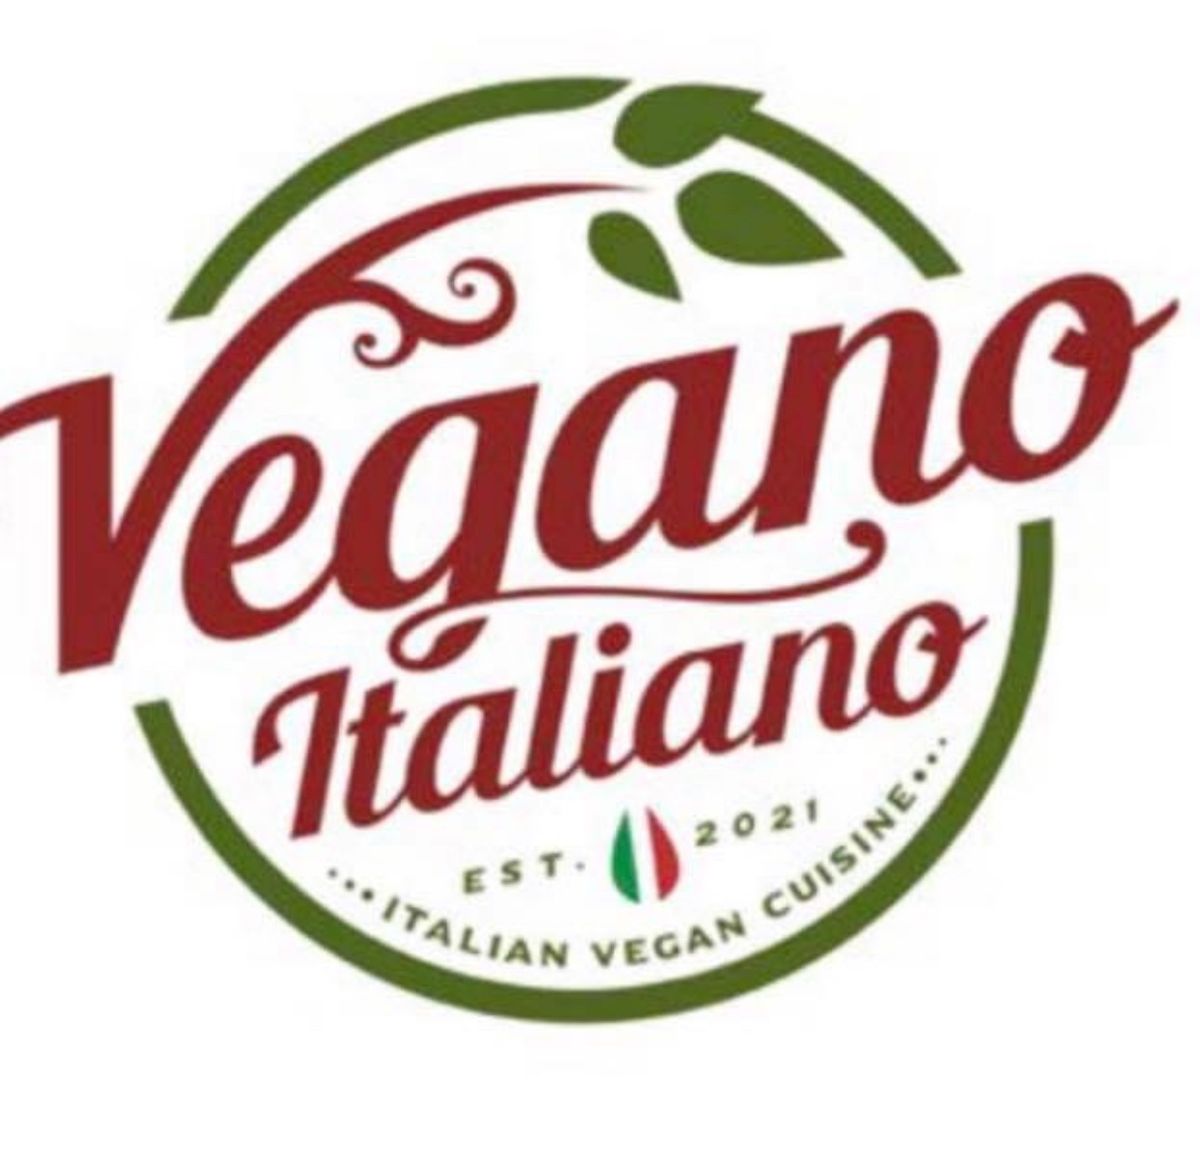 Vegano Italiano Food Truck (Vegan)